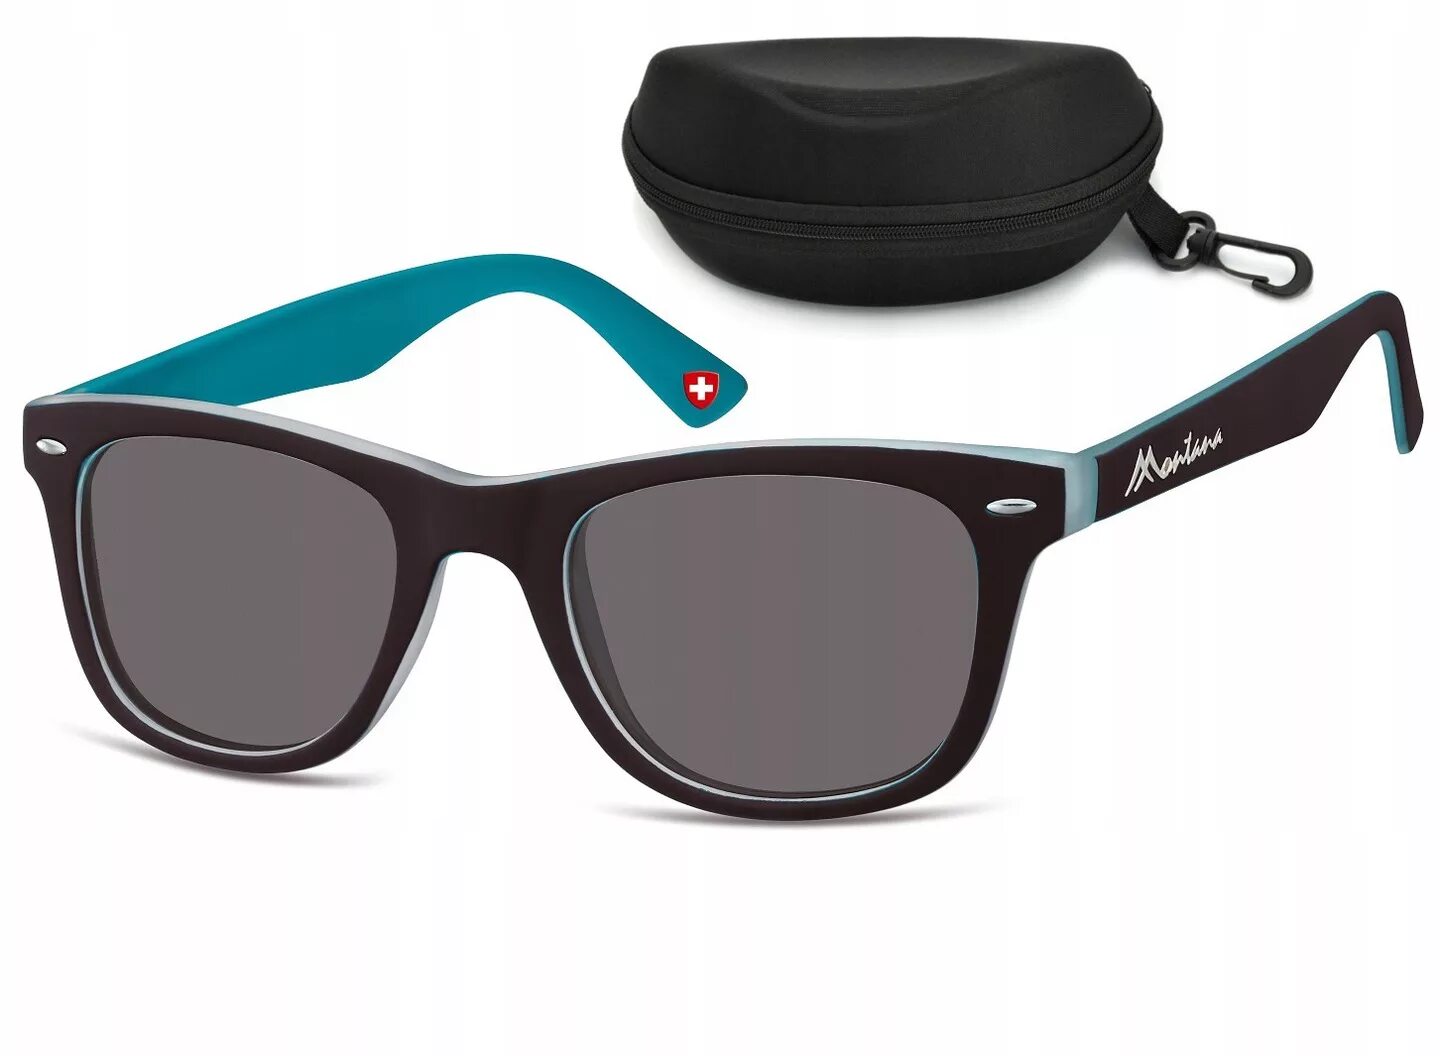 Солнцезащитные очки uv400. Очки унисекс. Солнцезащитные очки (унисекс). Солнечные очки унисекс. Unisex sunglasses